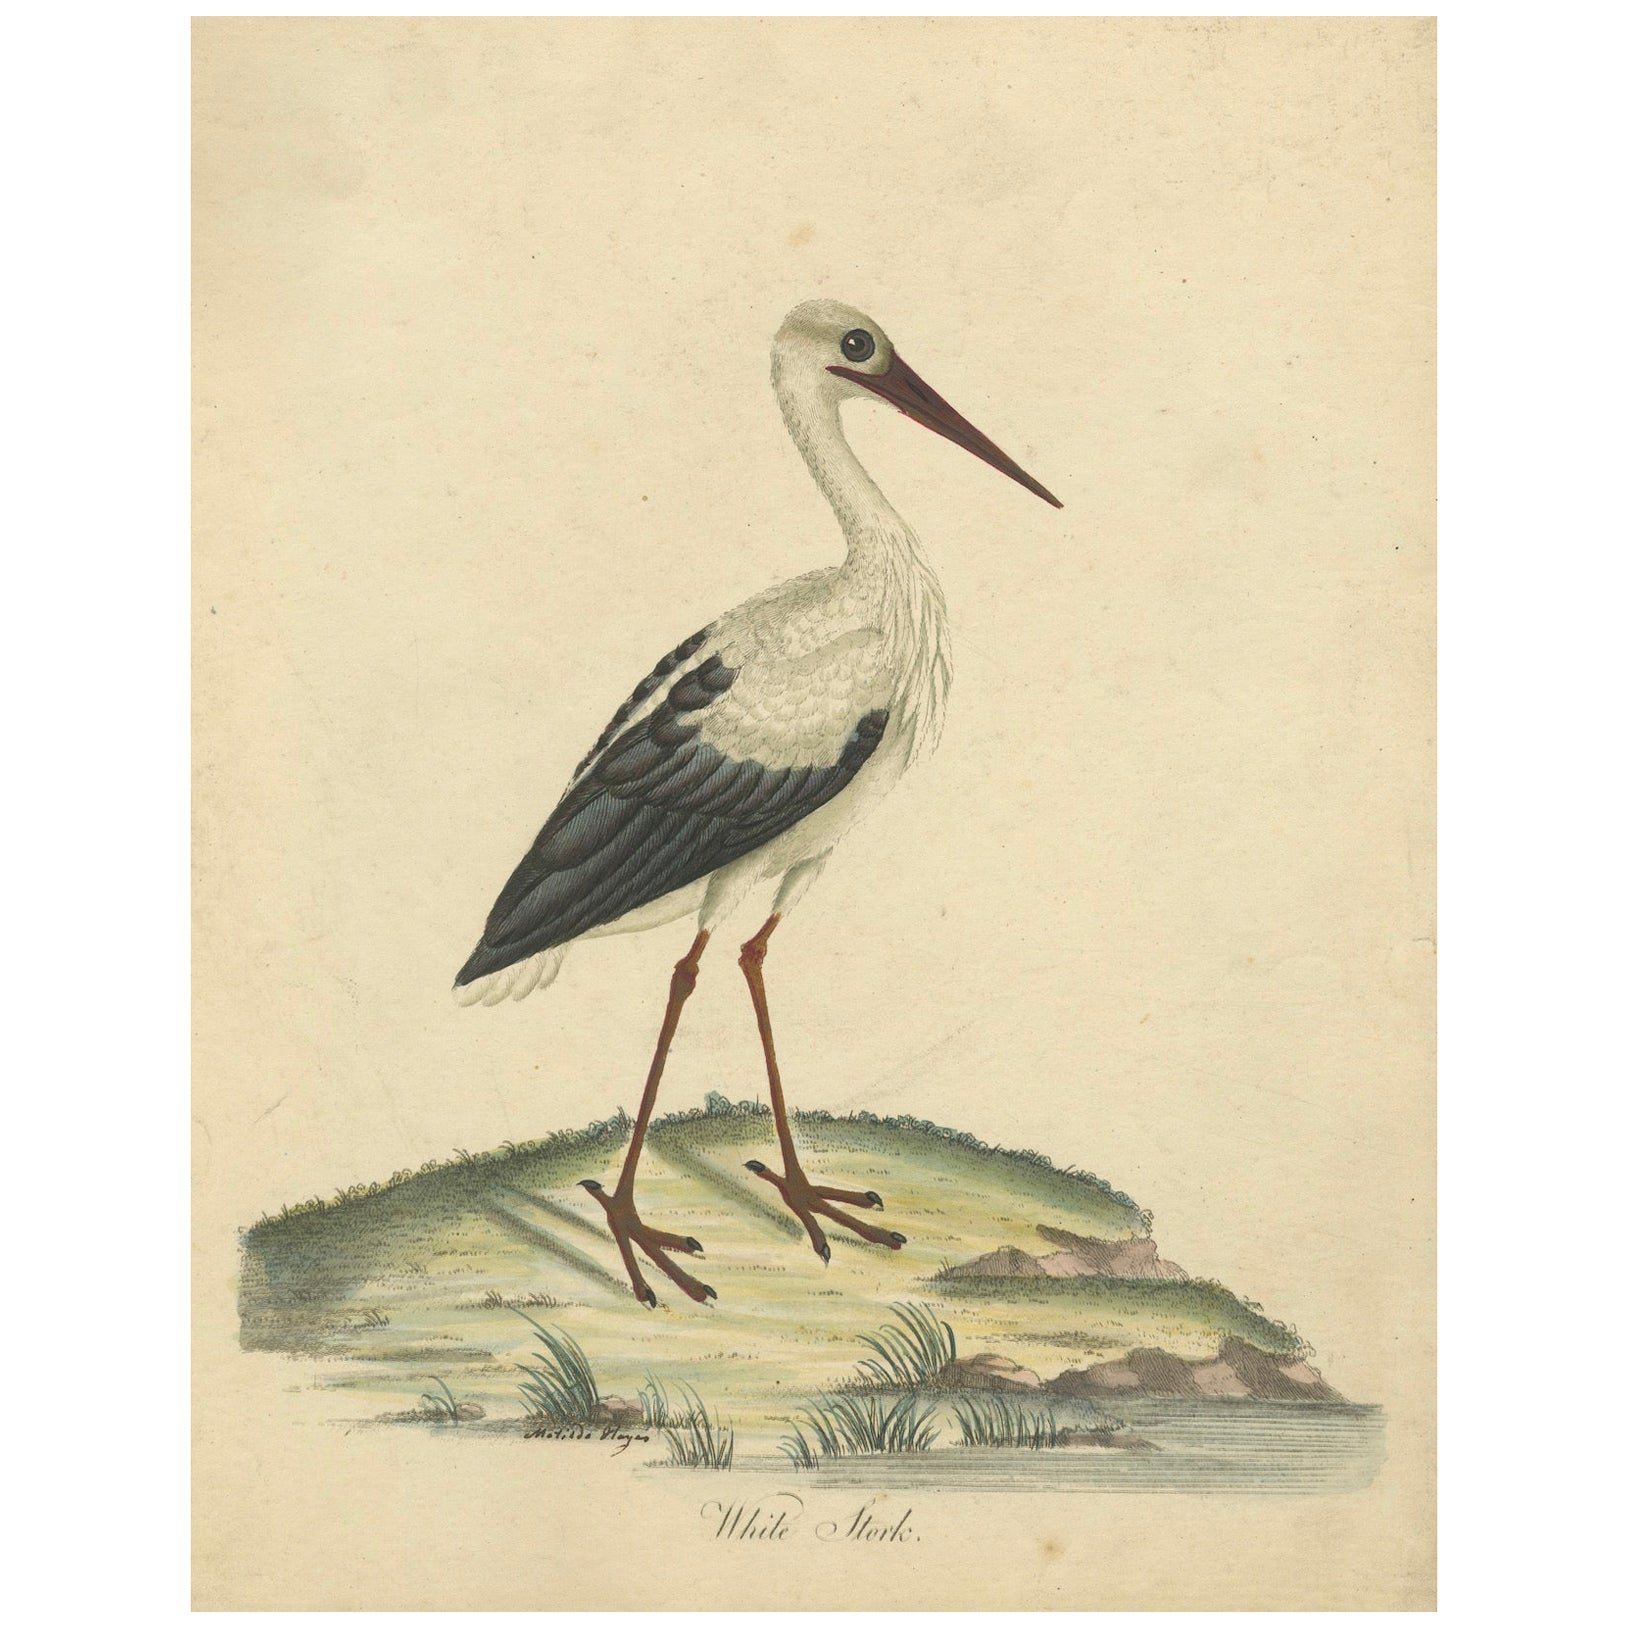 The Elegance of the White Stork Graved and in Original Hand-Coloring, 1794 (L'élégance de la cigogne blanche gravée et coloriée à la main)